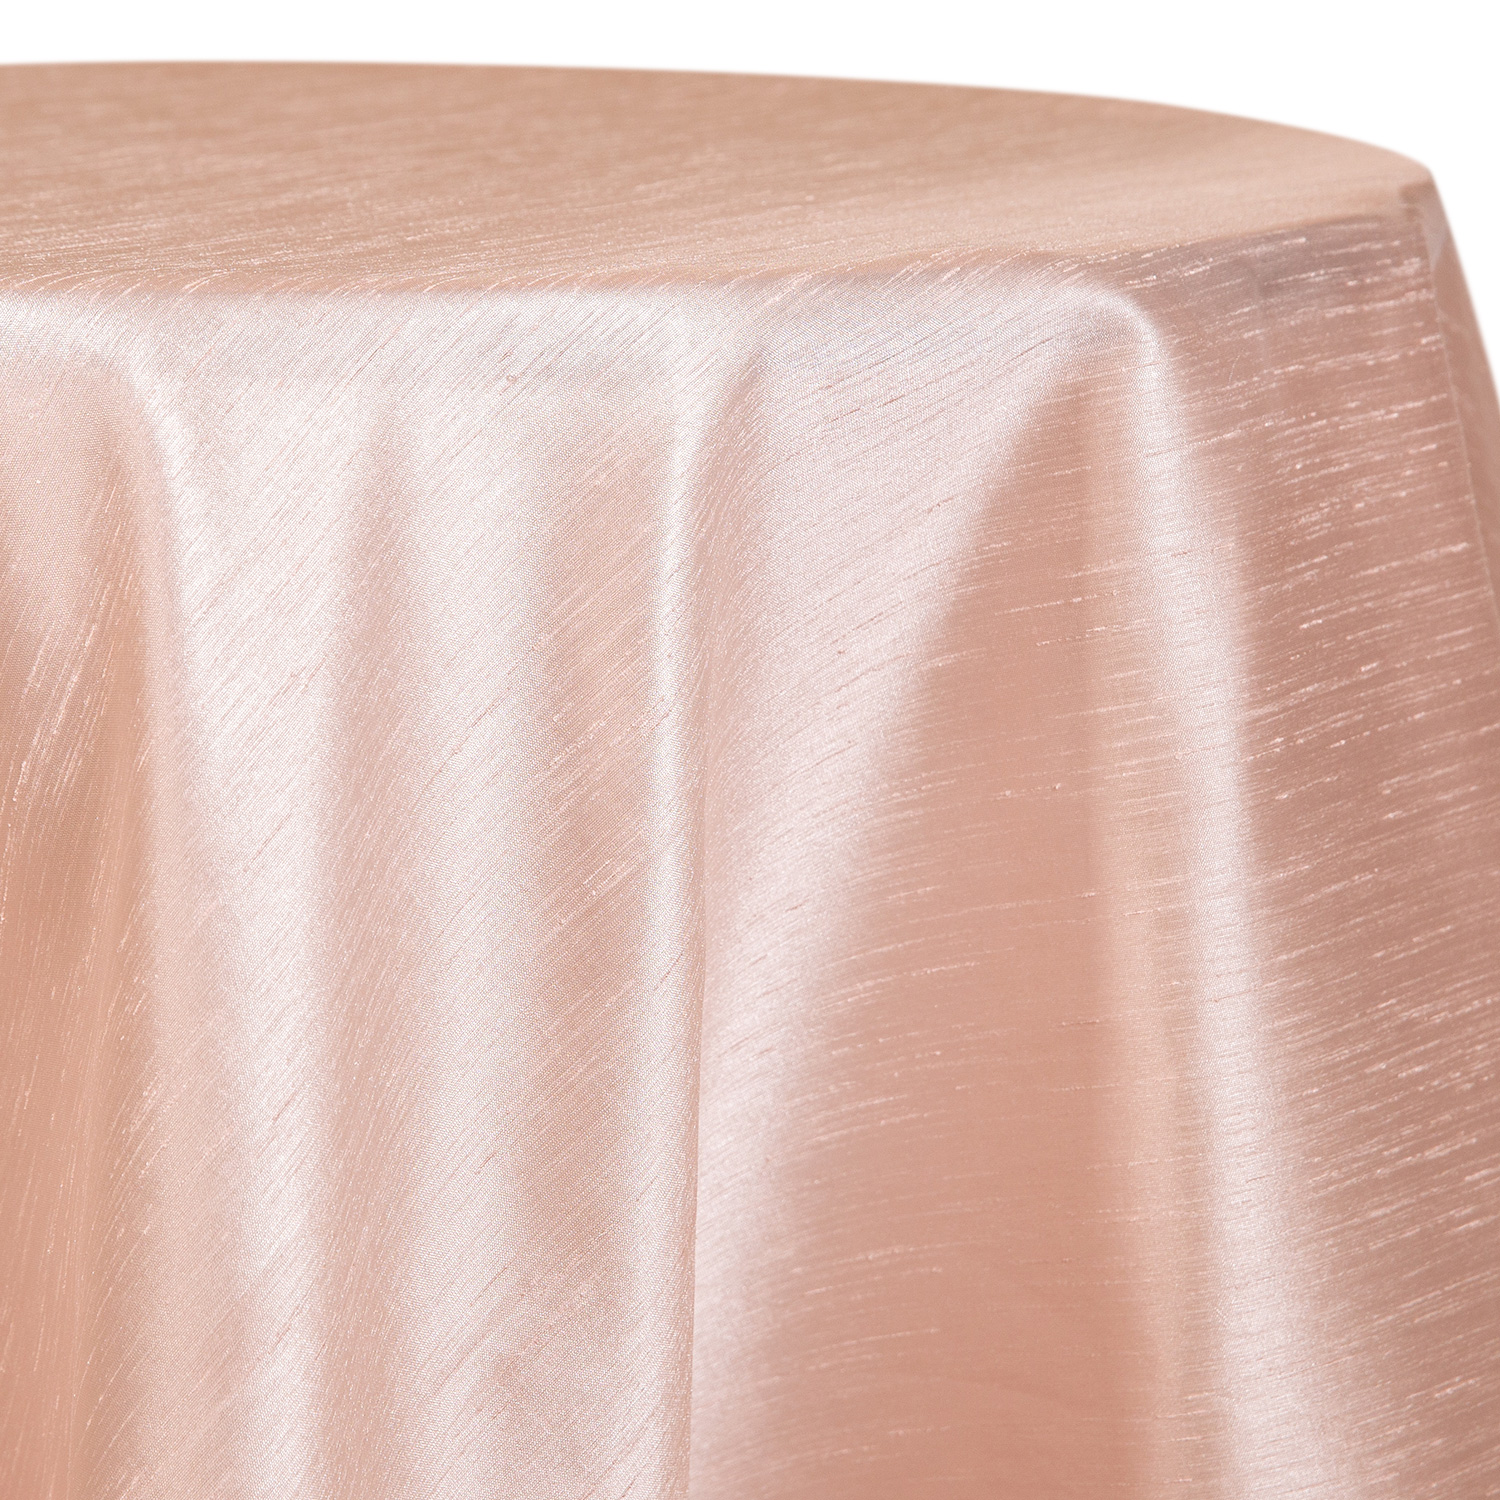 Juliette Pearl Table Linen - Linen Rentals, Wedding Table Linen, Runners,  Chair Covers